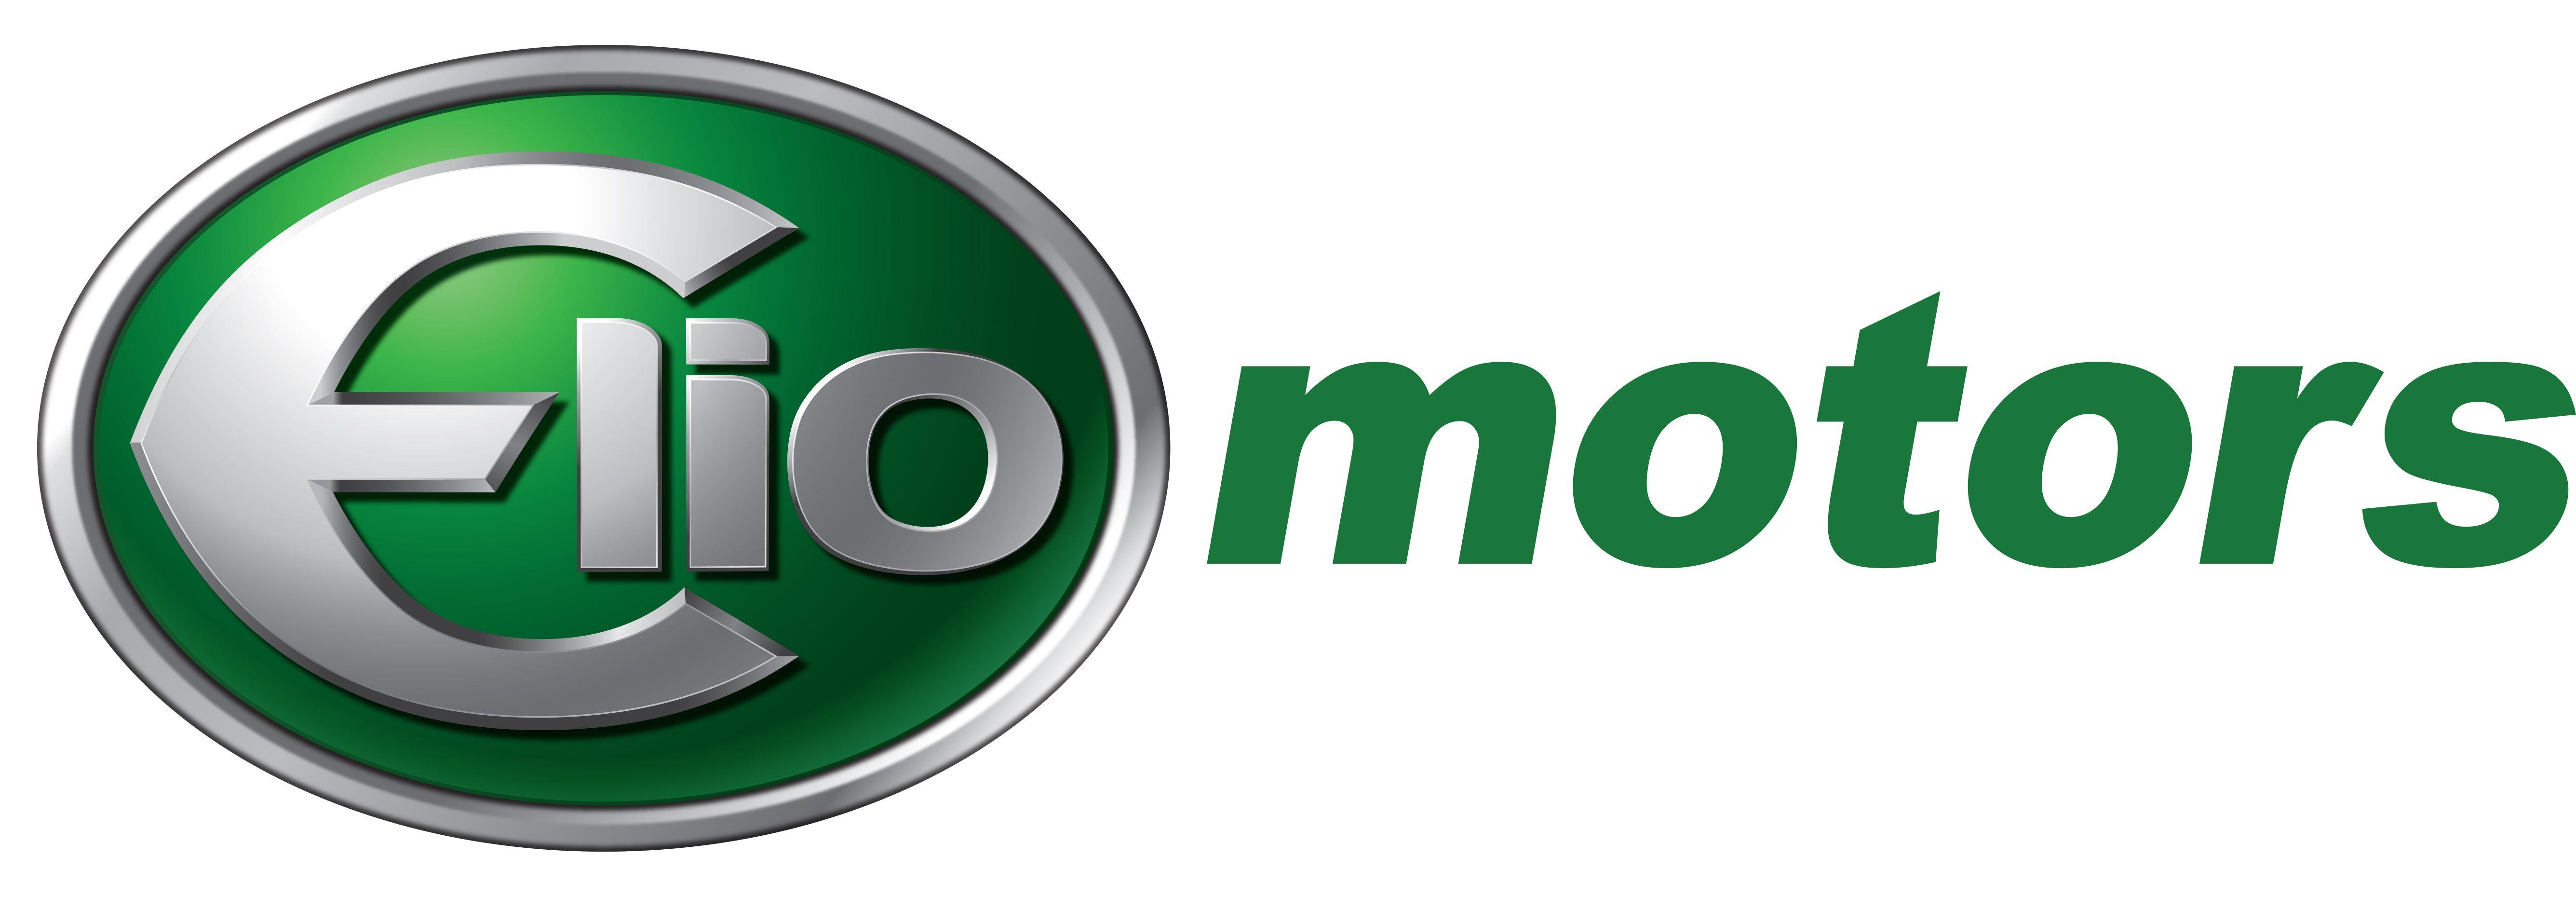 Old General Motors Logo - Elio Motors 3-Wheeled Car Delayed Until September 2015 | InvestorPlace